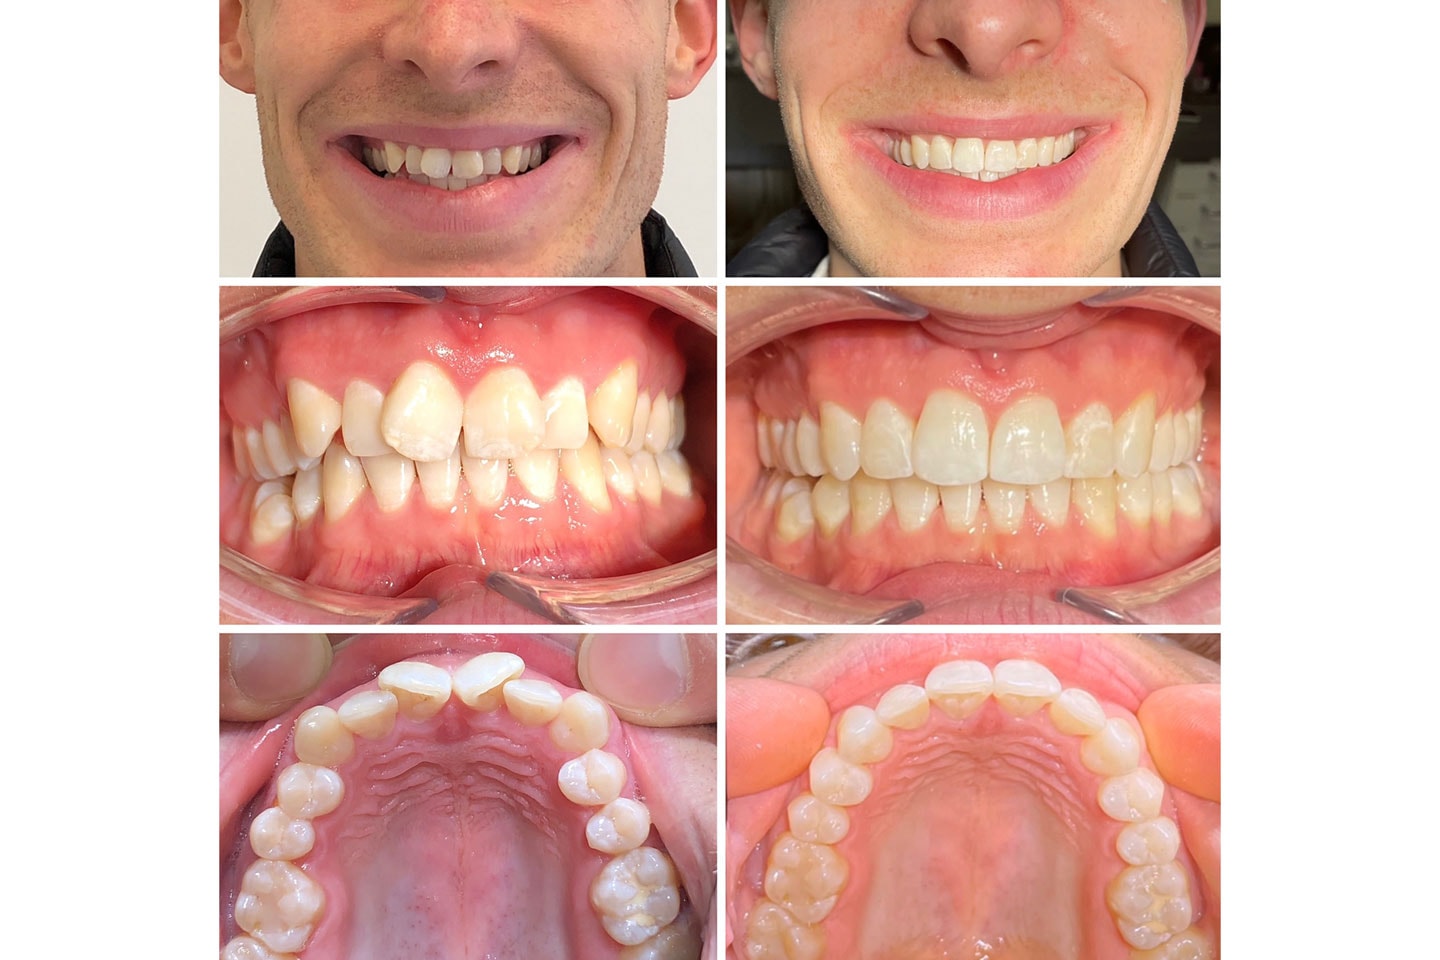 Tandreglering med Invisalign hos leg.tandläkare, nära Järntorget (9 av 12) (10 av 12)